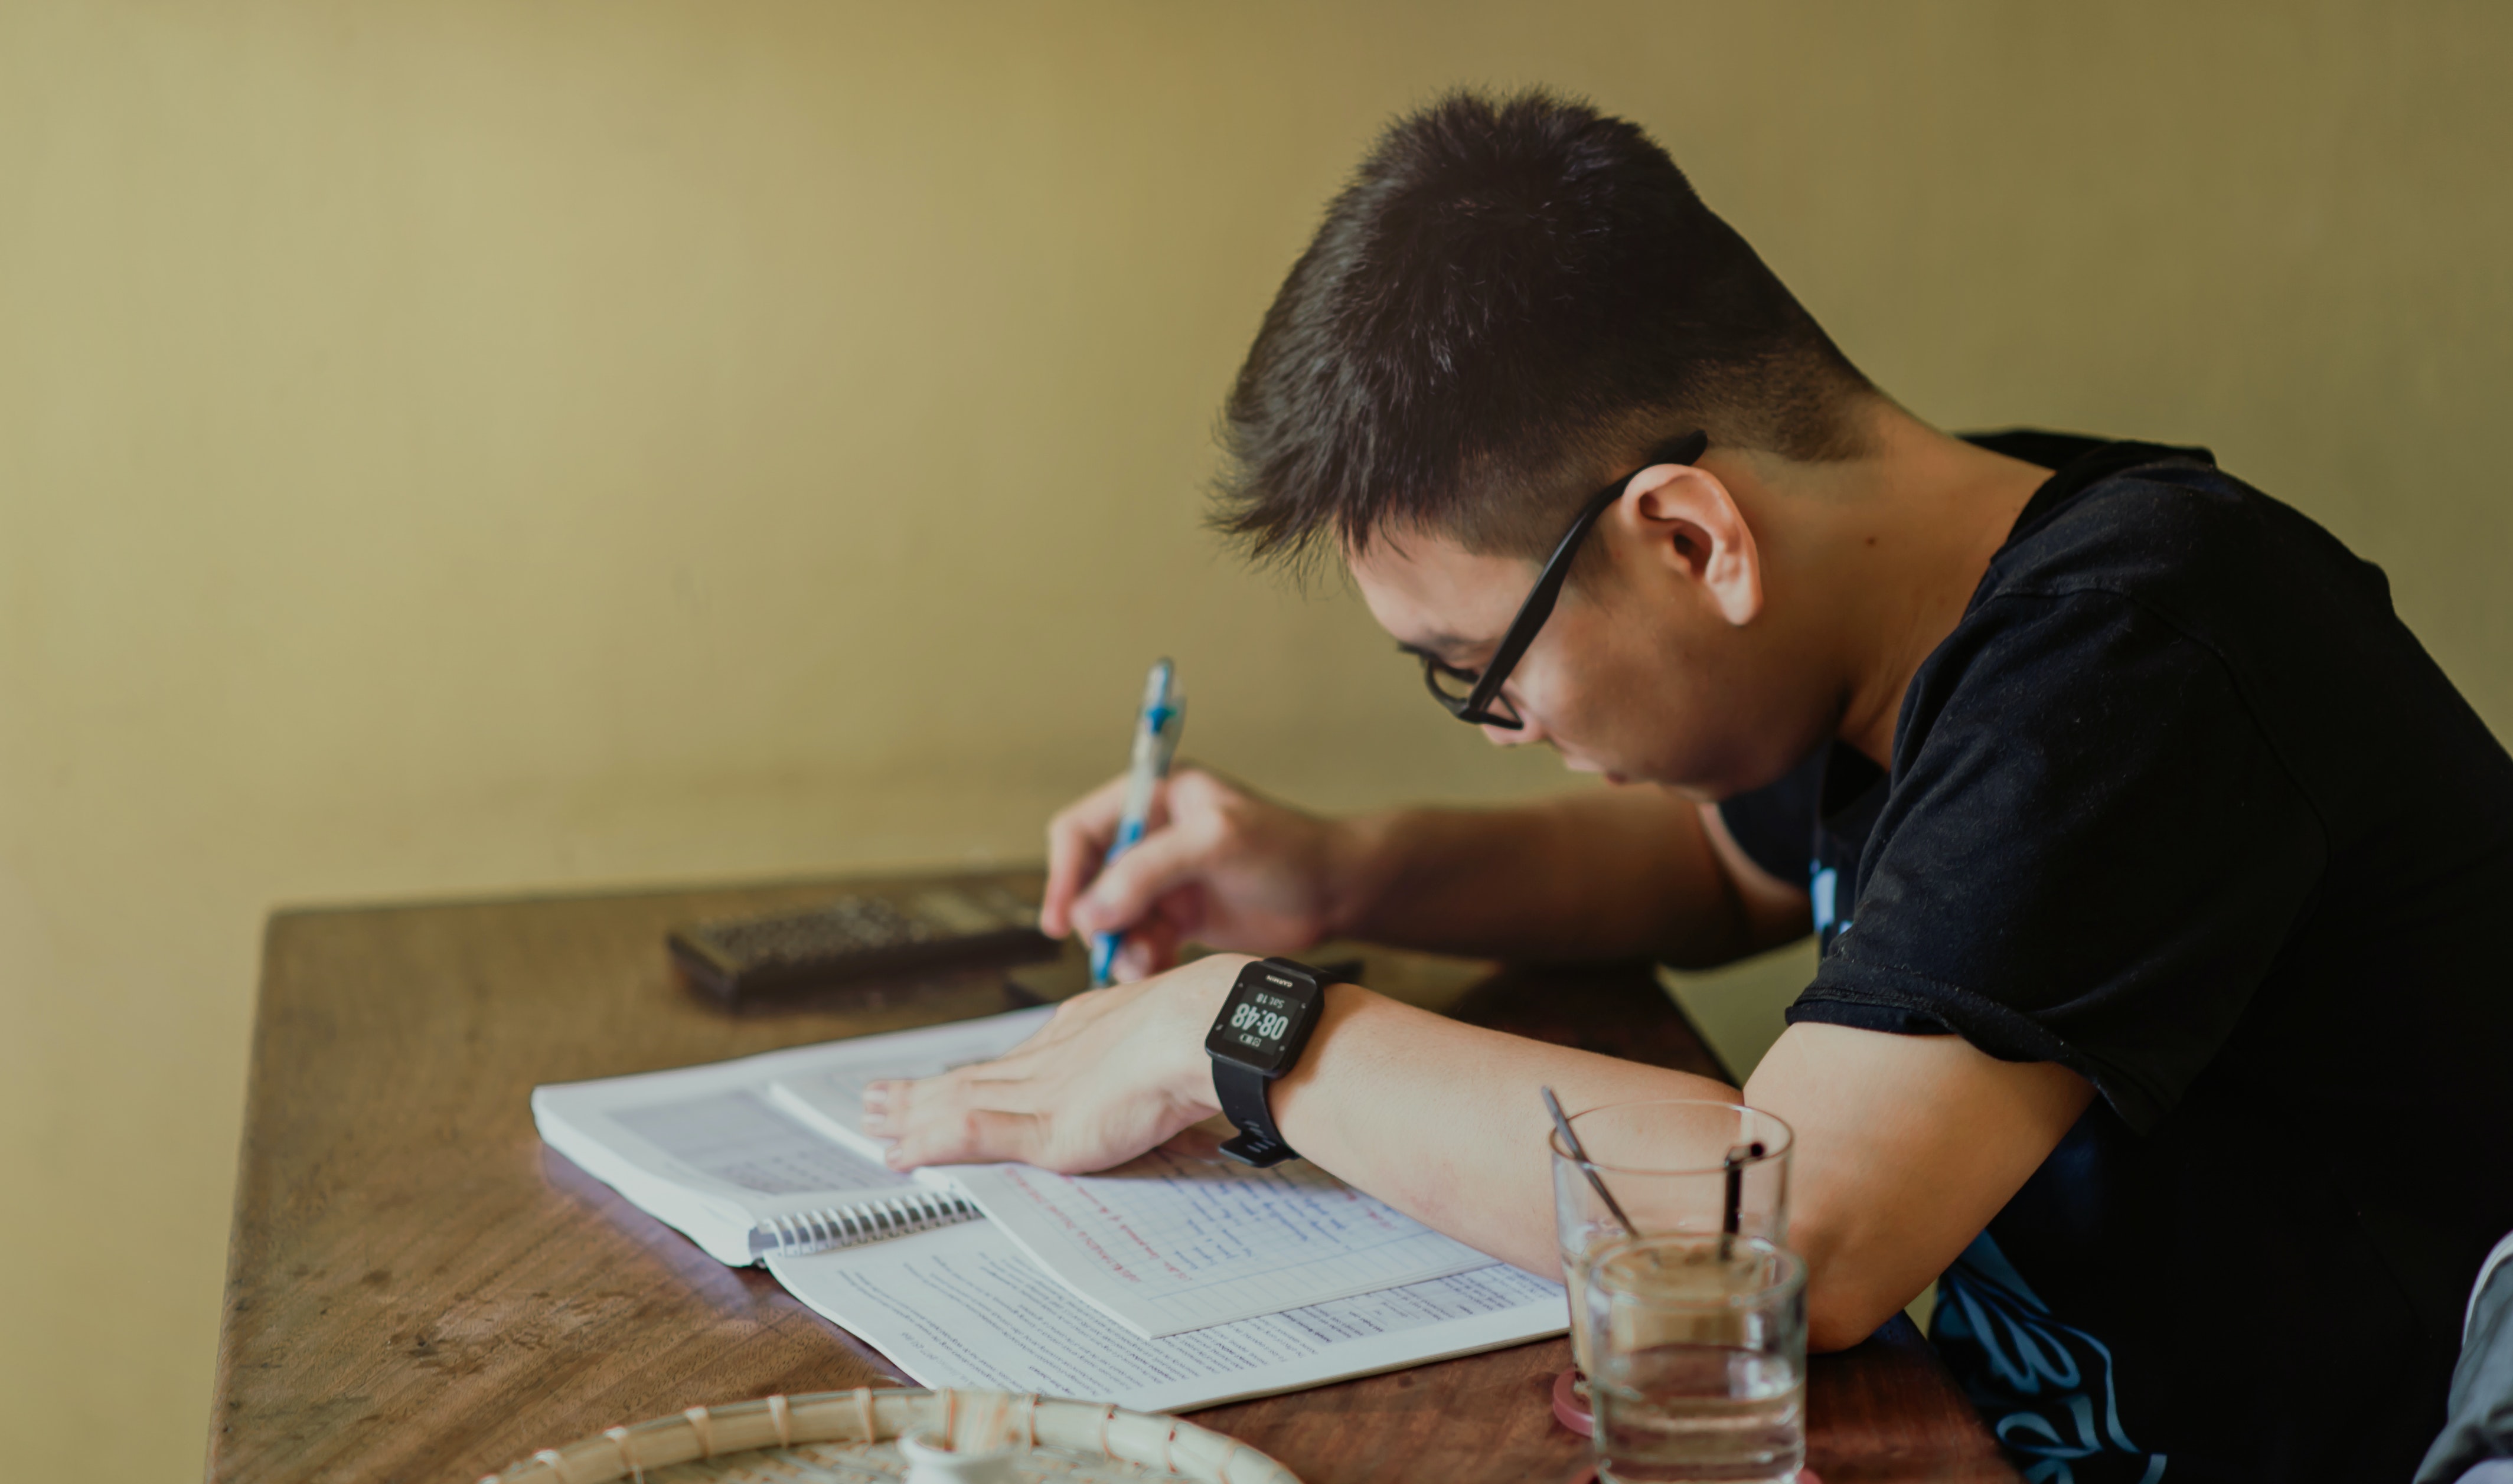 Imagem mostra um menino adolescente de lado,  com uma caneta nas mãos escrevendo em uma apostila. 